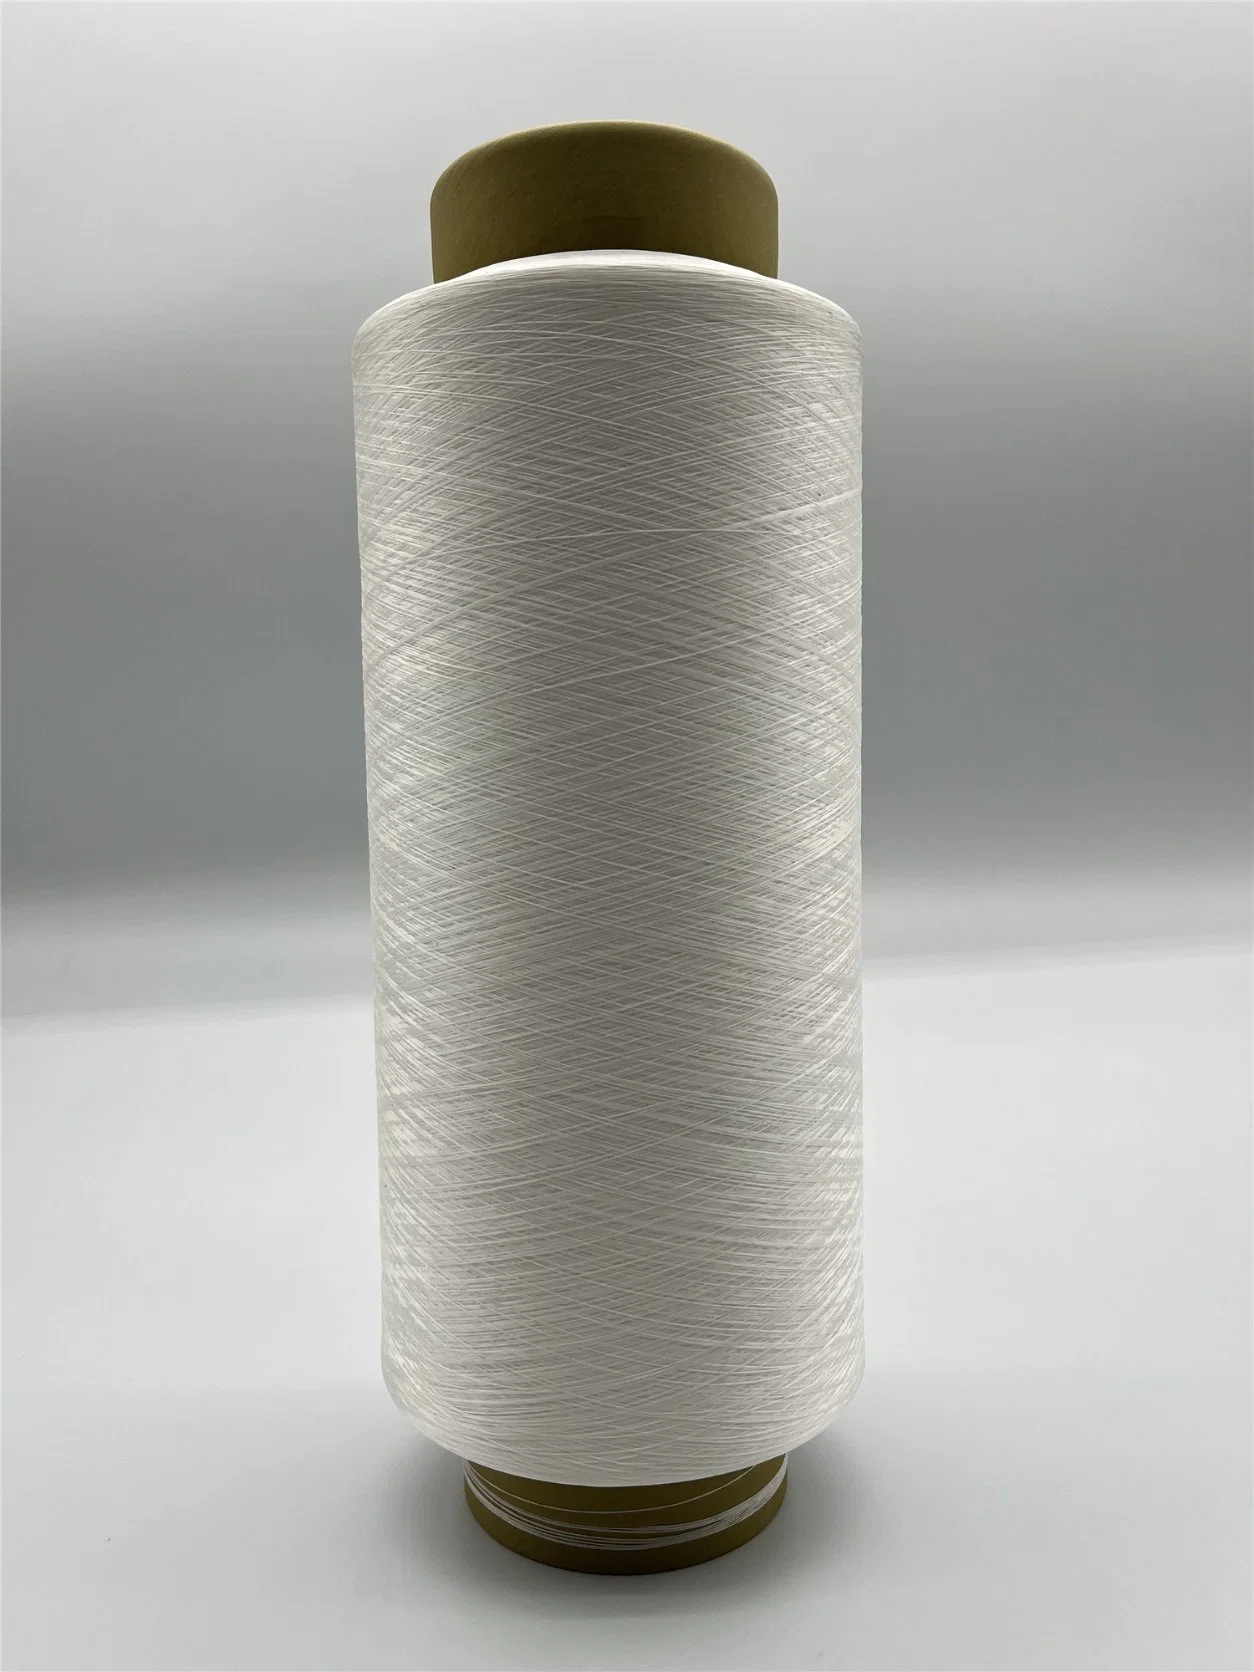 Excellent DTY PBT haute élastique fil 100D/36F Matières premières textiles filés de polyester pour le tricotage et de tissage Maillot